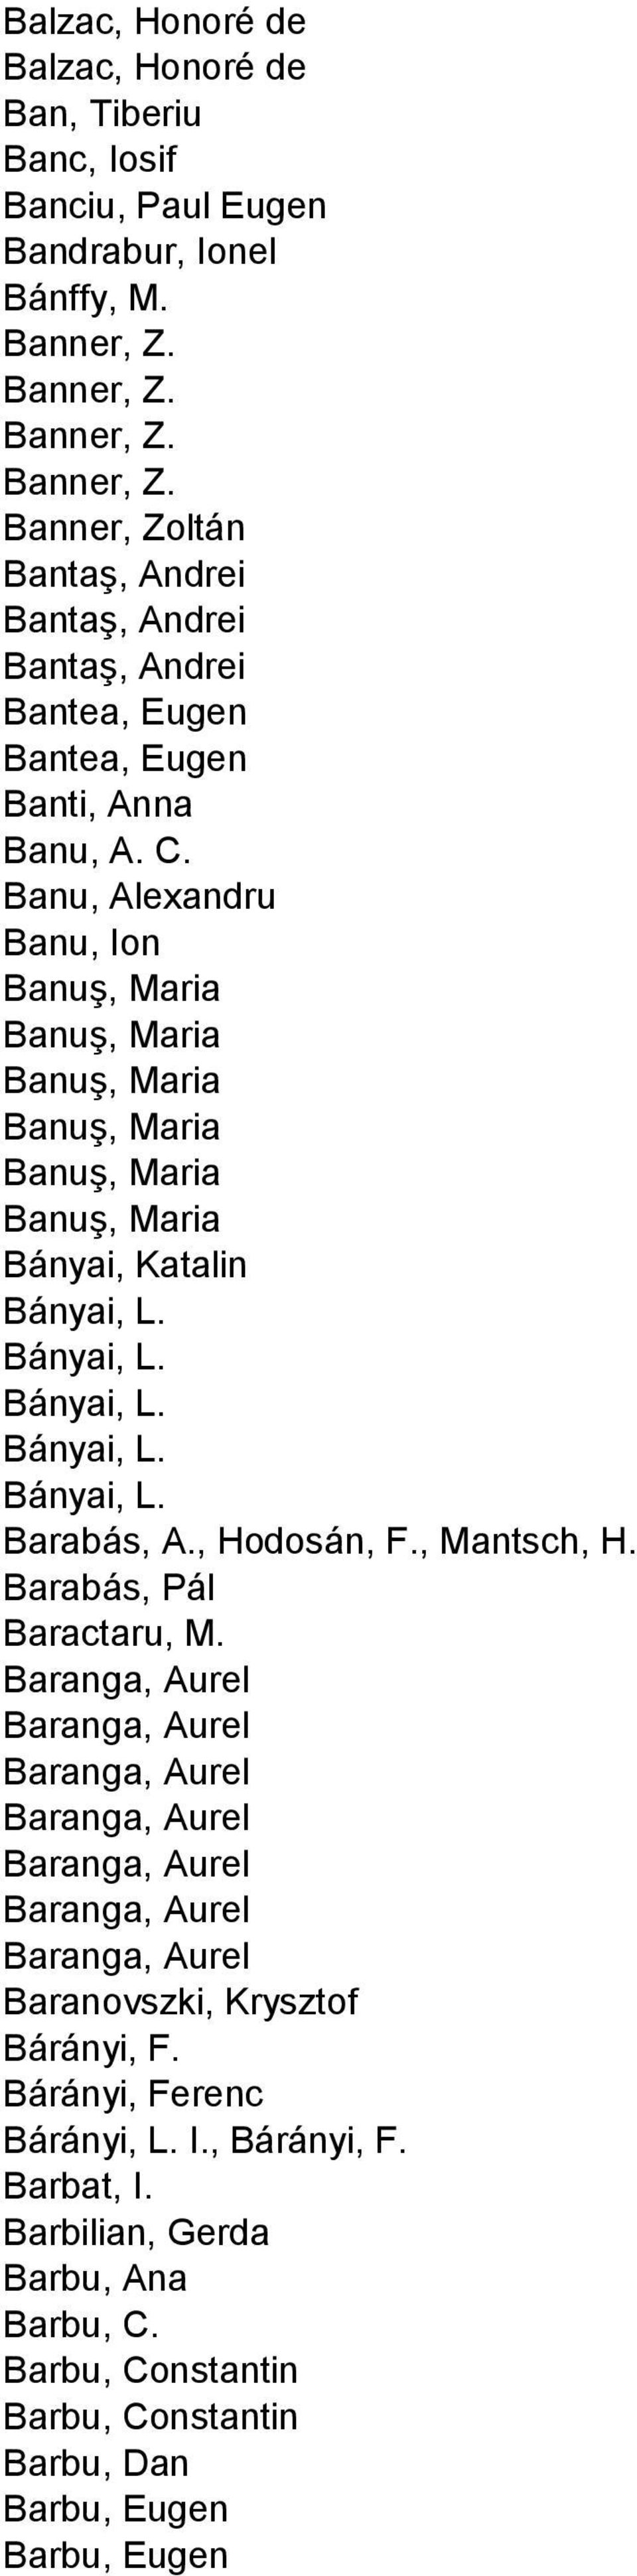 Banu, Alexandru Banu, Ion Banuş, Maria Banuş, Maria Banuş, Maria Banuş, Maria Banuş, Maria Banuş, Maria Bányai, Katalin Bányai, L. Bányai, L. Bányai, L. Bányai, L. Bányai, L. Barabás, A., Hodosán, F.